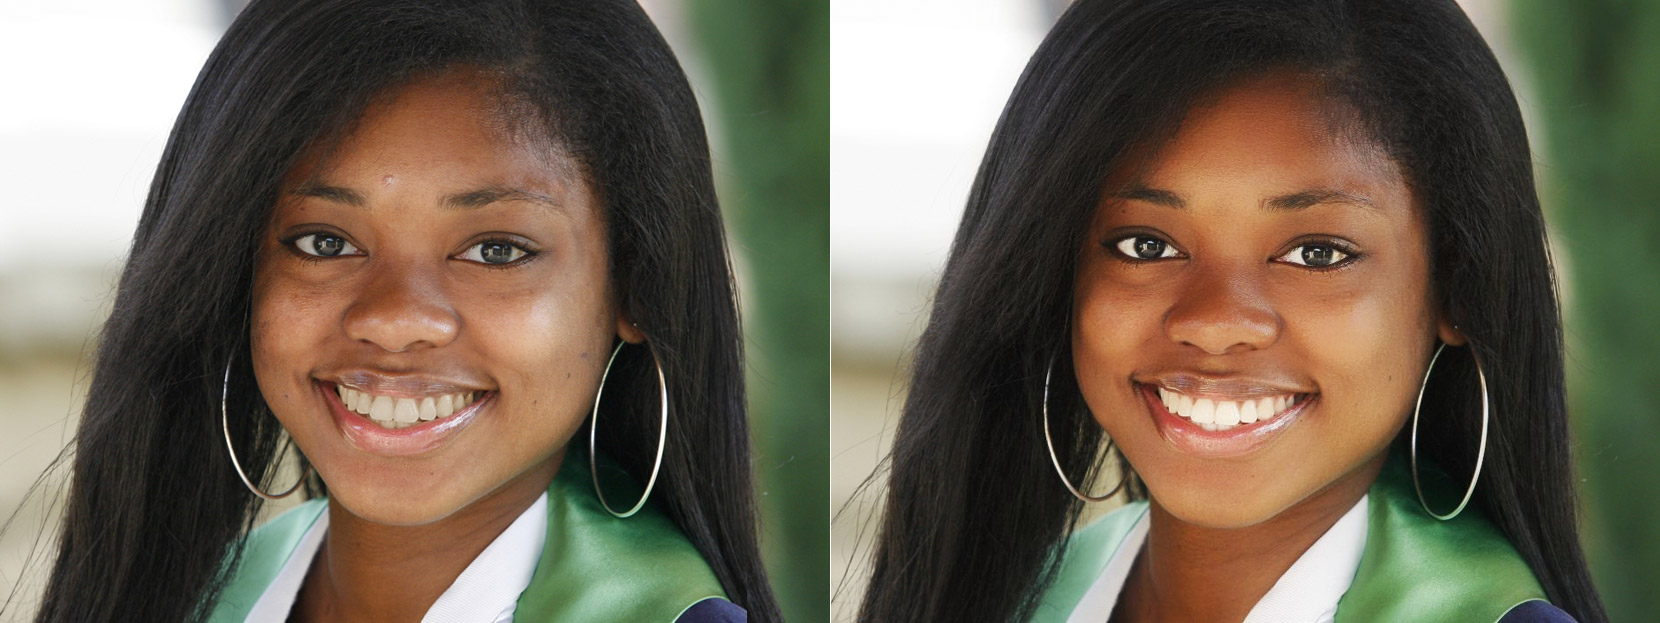 Фото до и после ретуши на сервисе Makeup.Pho.to